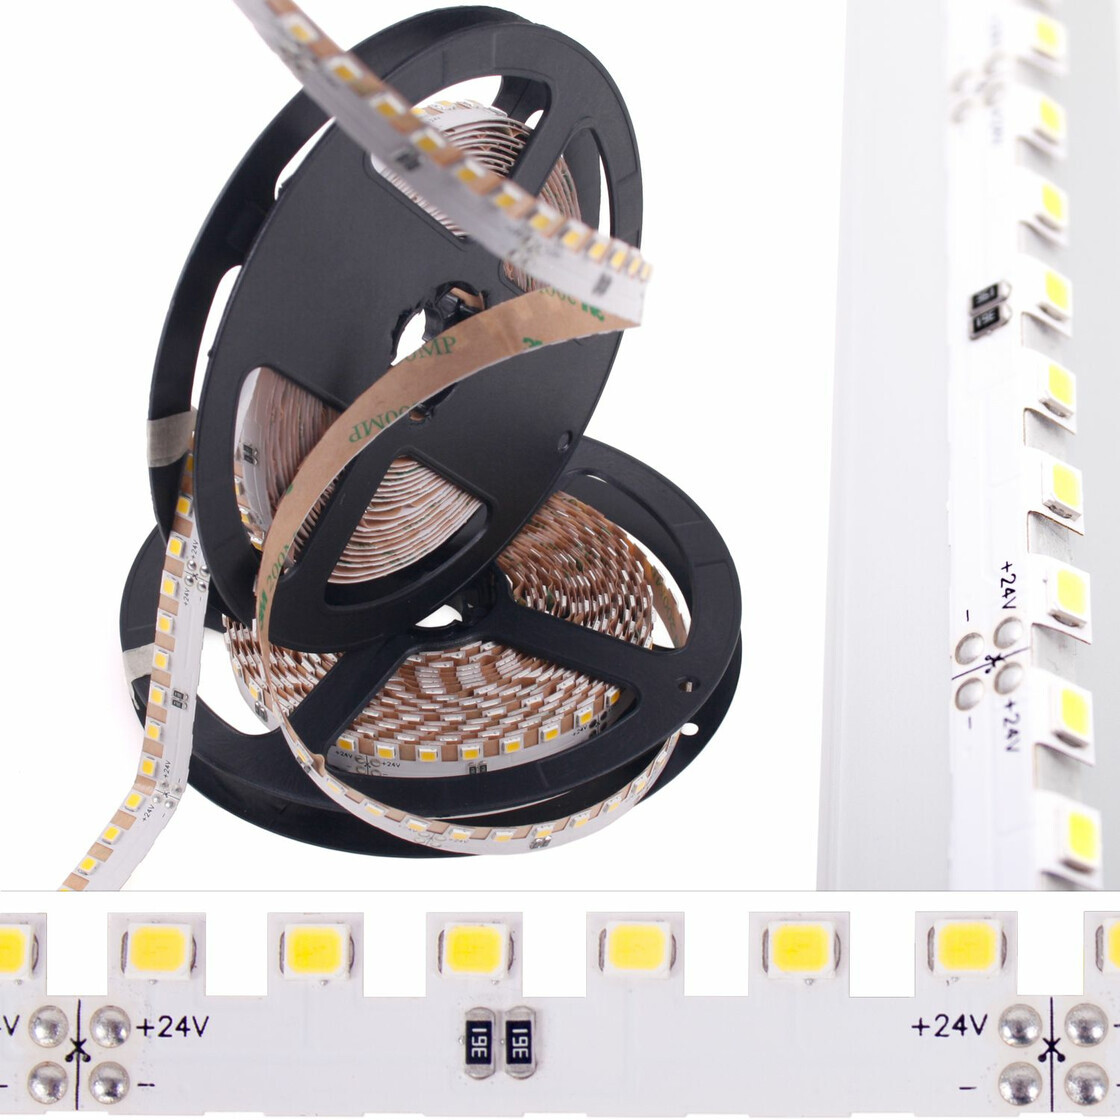 DEMODU® Premium 24V LED Sägezahn Weiß 5m Rolle 960 Lumen pro Meter IP,  21,99 €